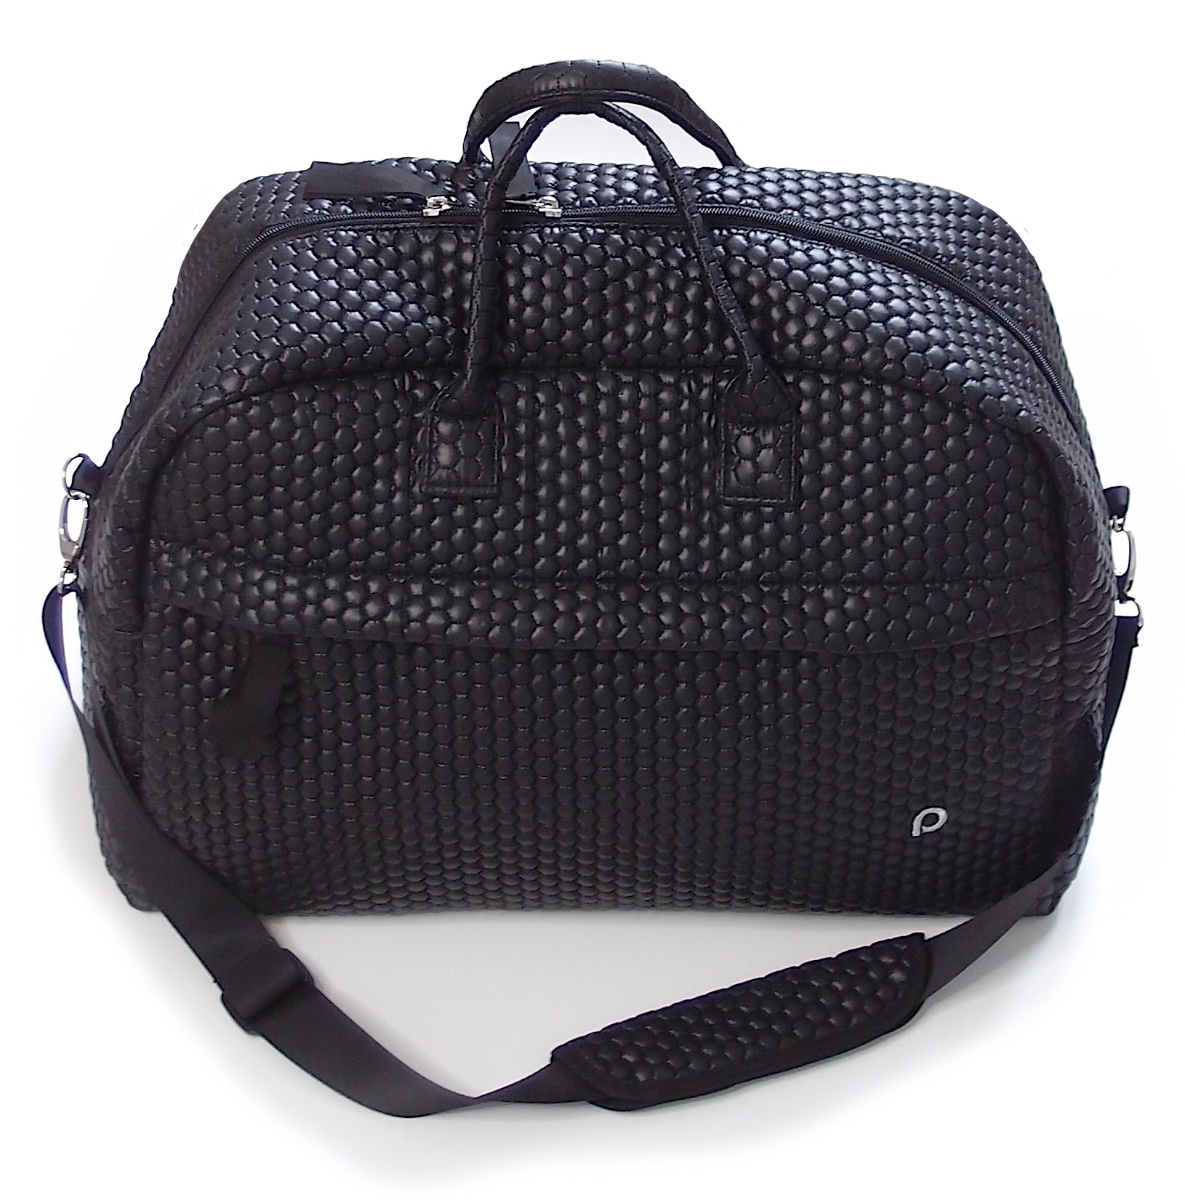 kliknutít zobrazíte maximální velikost obrázku cestovná taška Black Comb